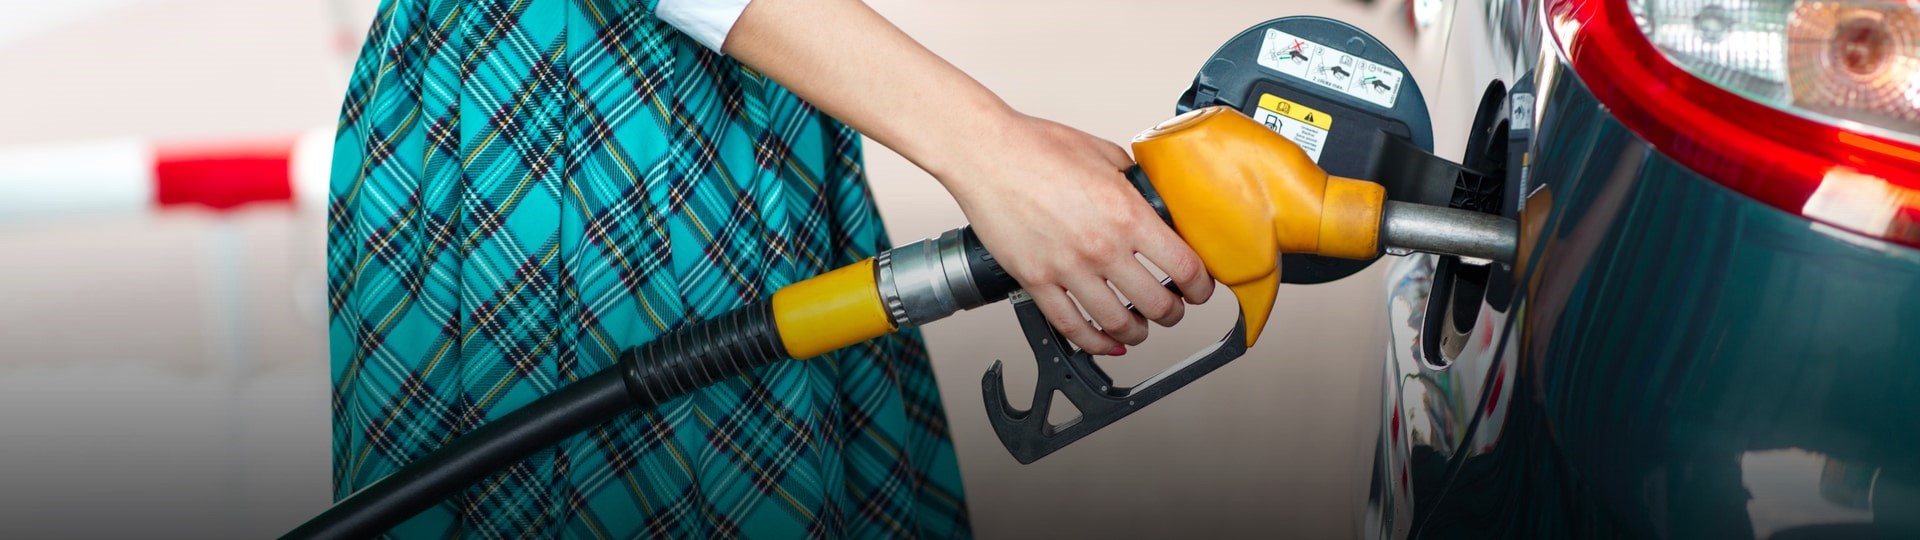 Ceny pohonných hmot rostou již více než 2 měsíce